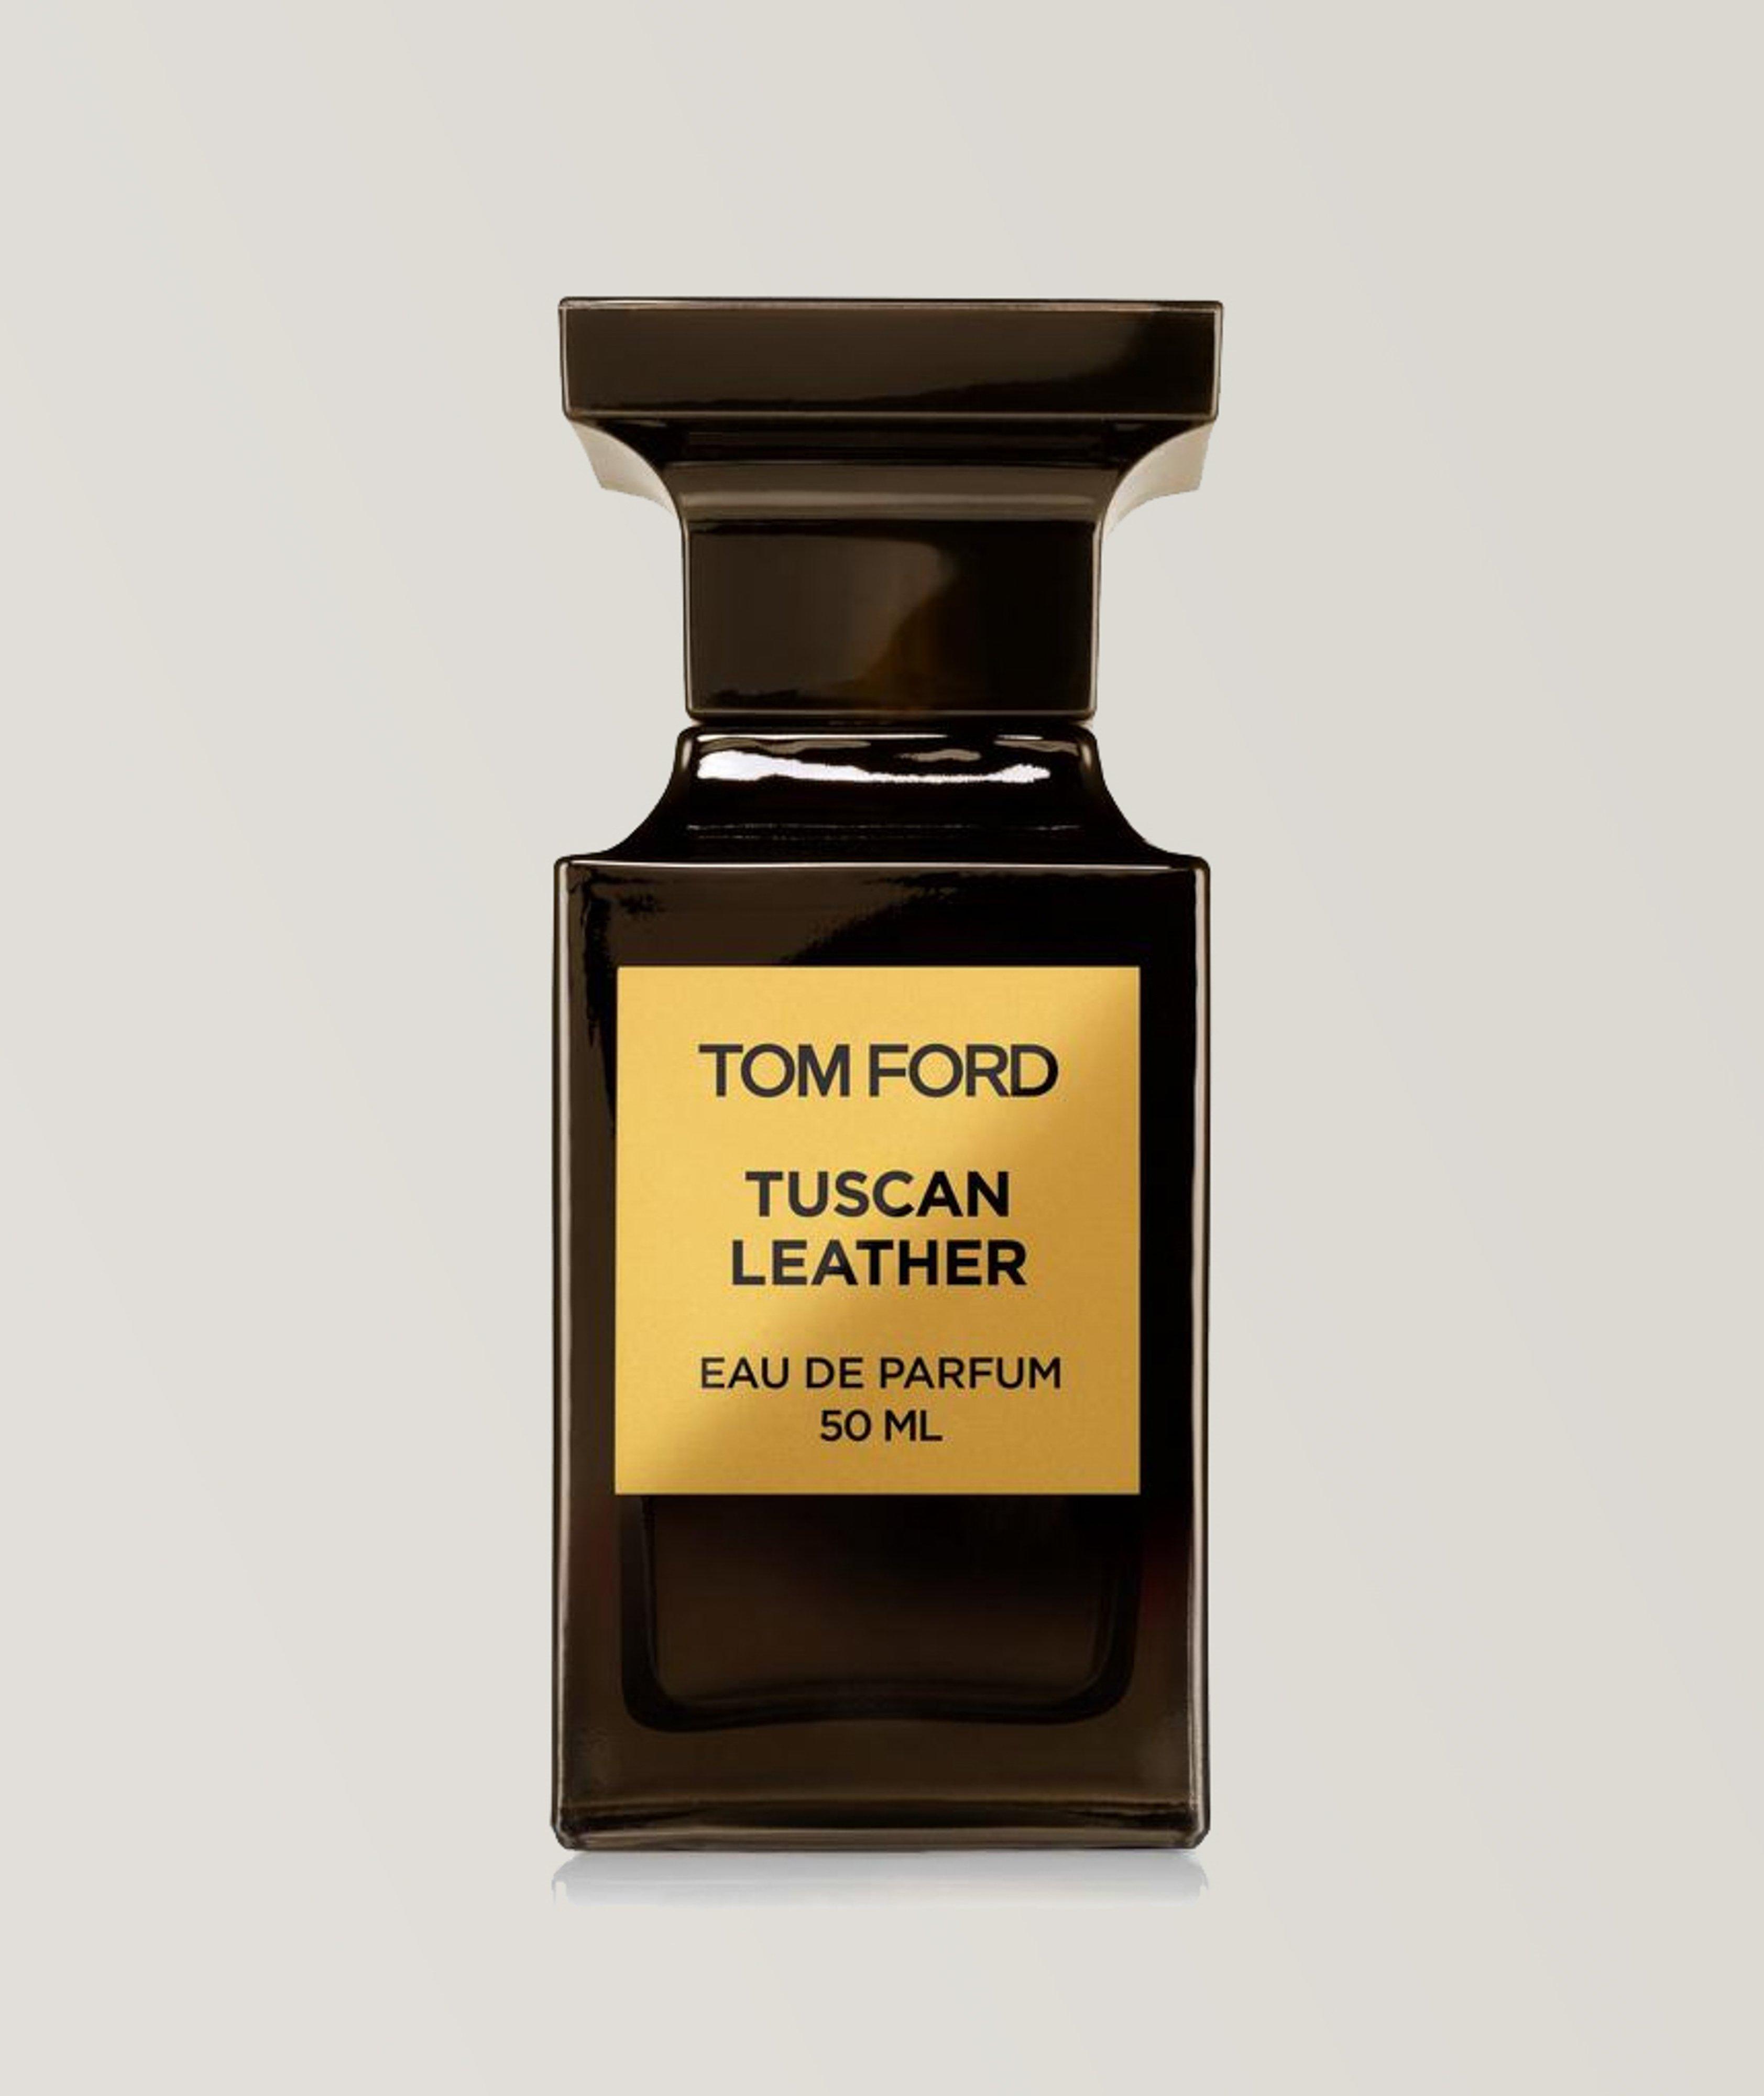 Eau de parfum Tuscan Leather (50 ml) image 0